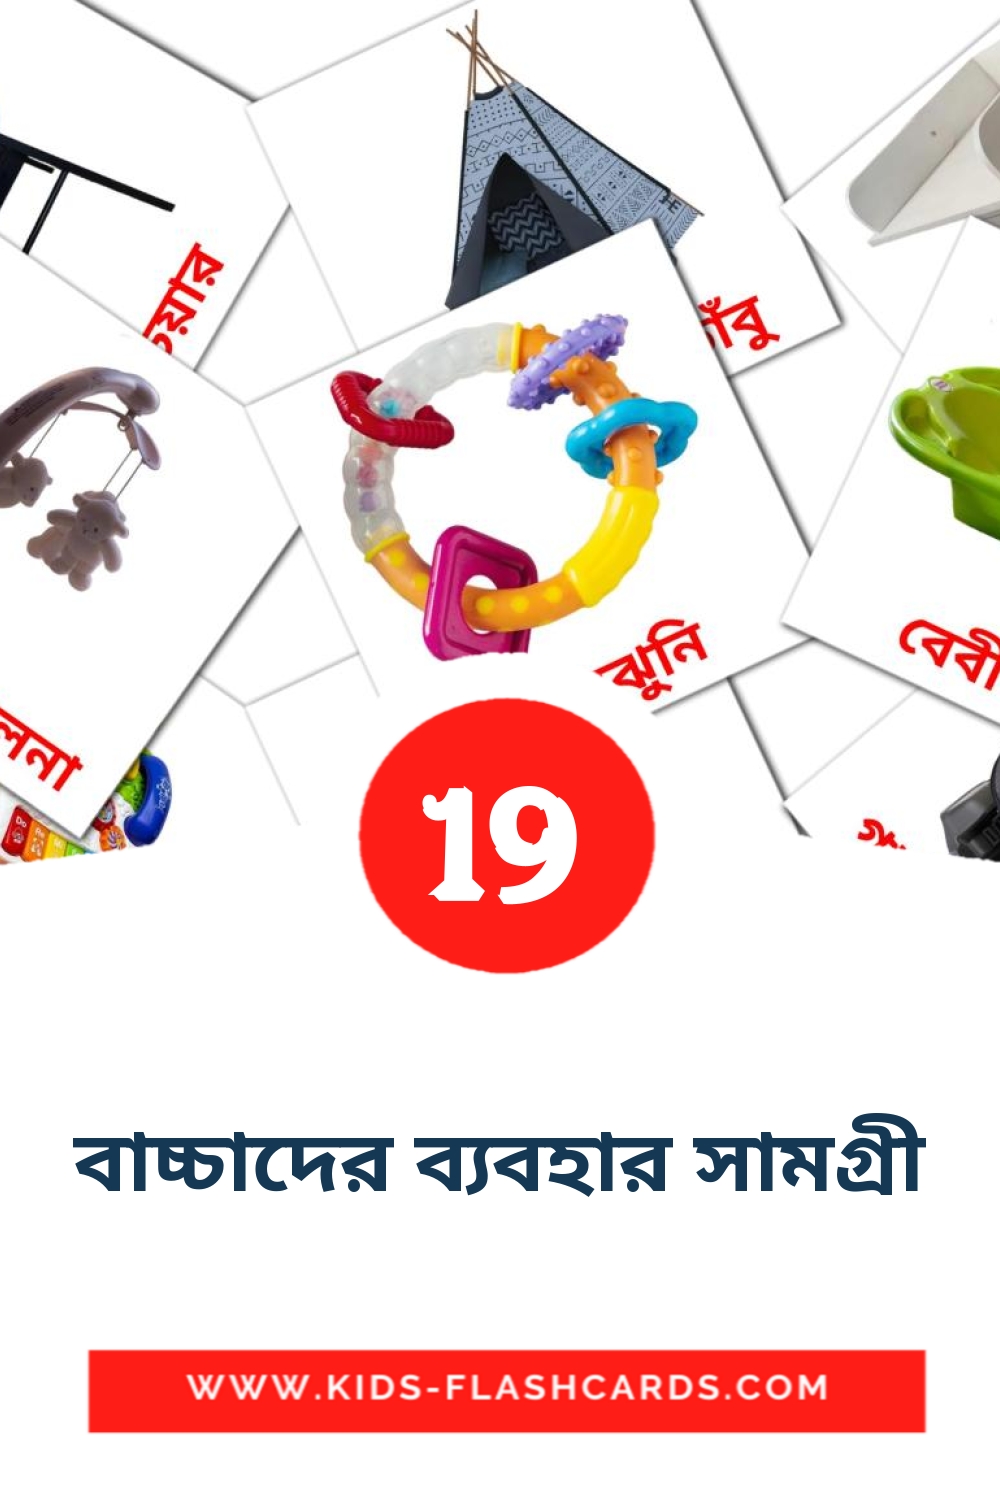 19 cartes illustrées de বাচ্চাদের ব্যবহার সামগ্রী pour la maternelle en bengali